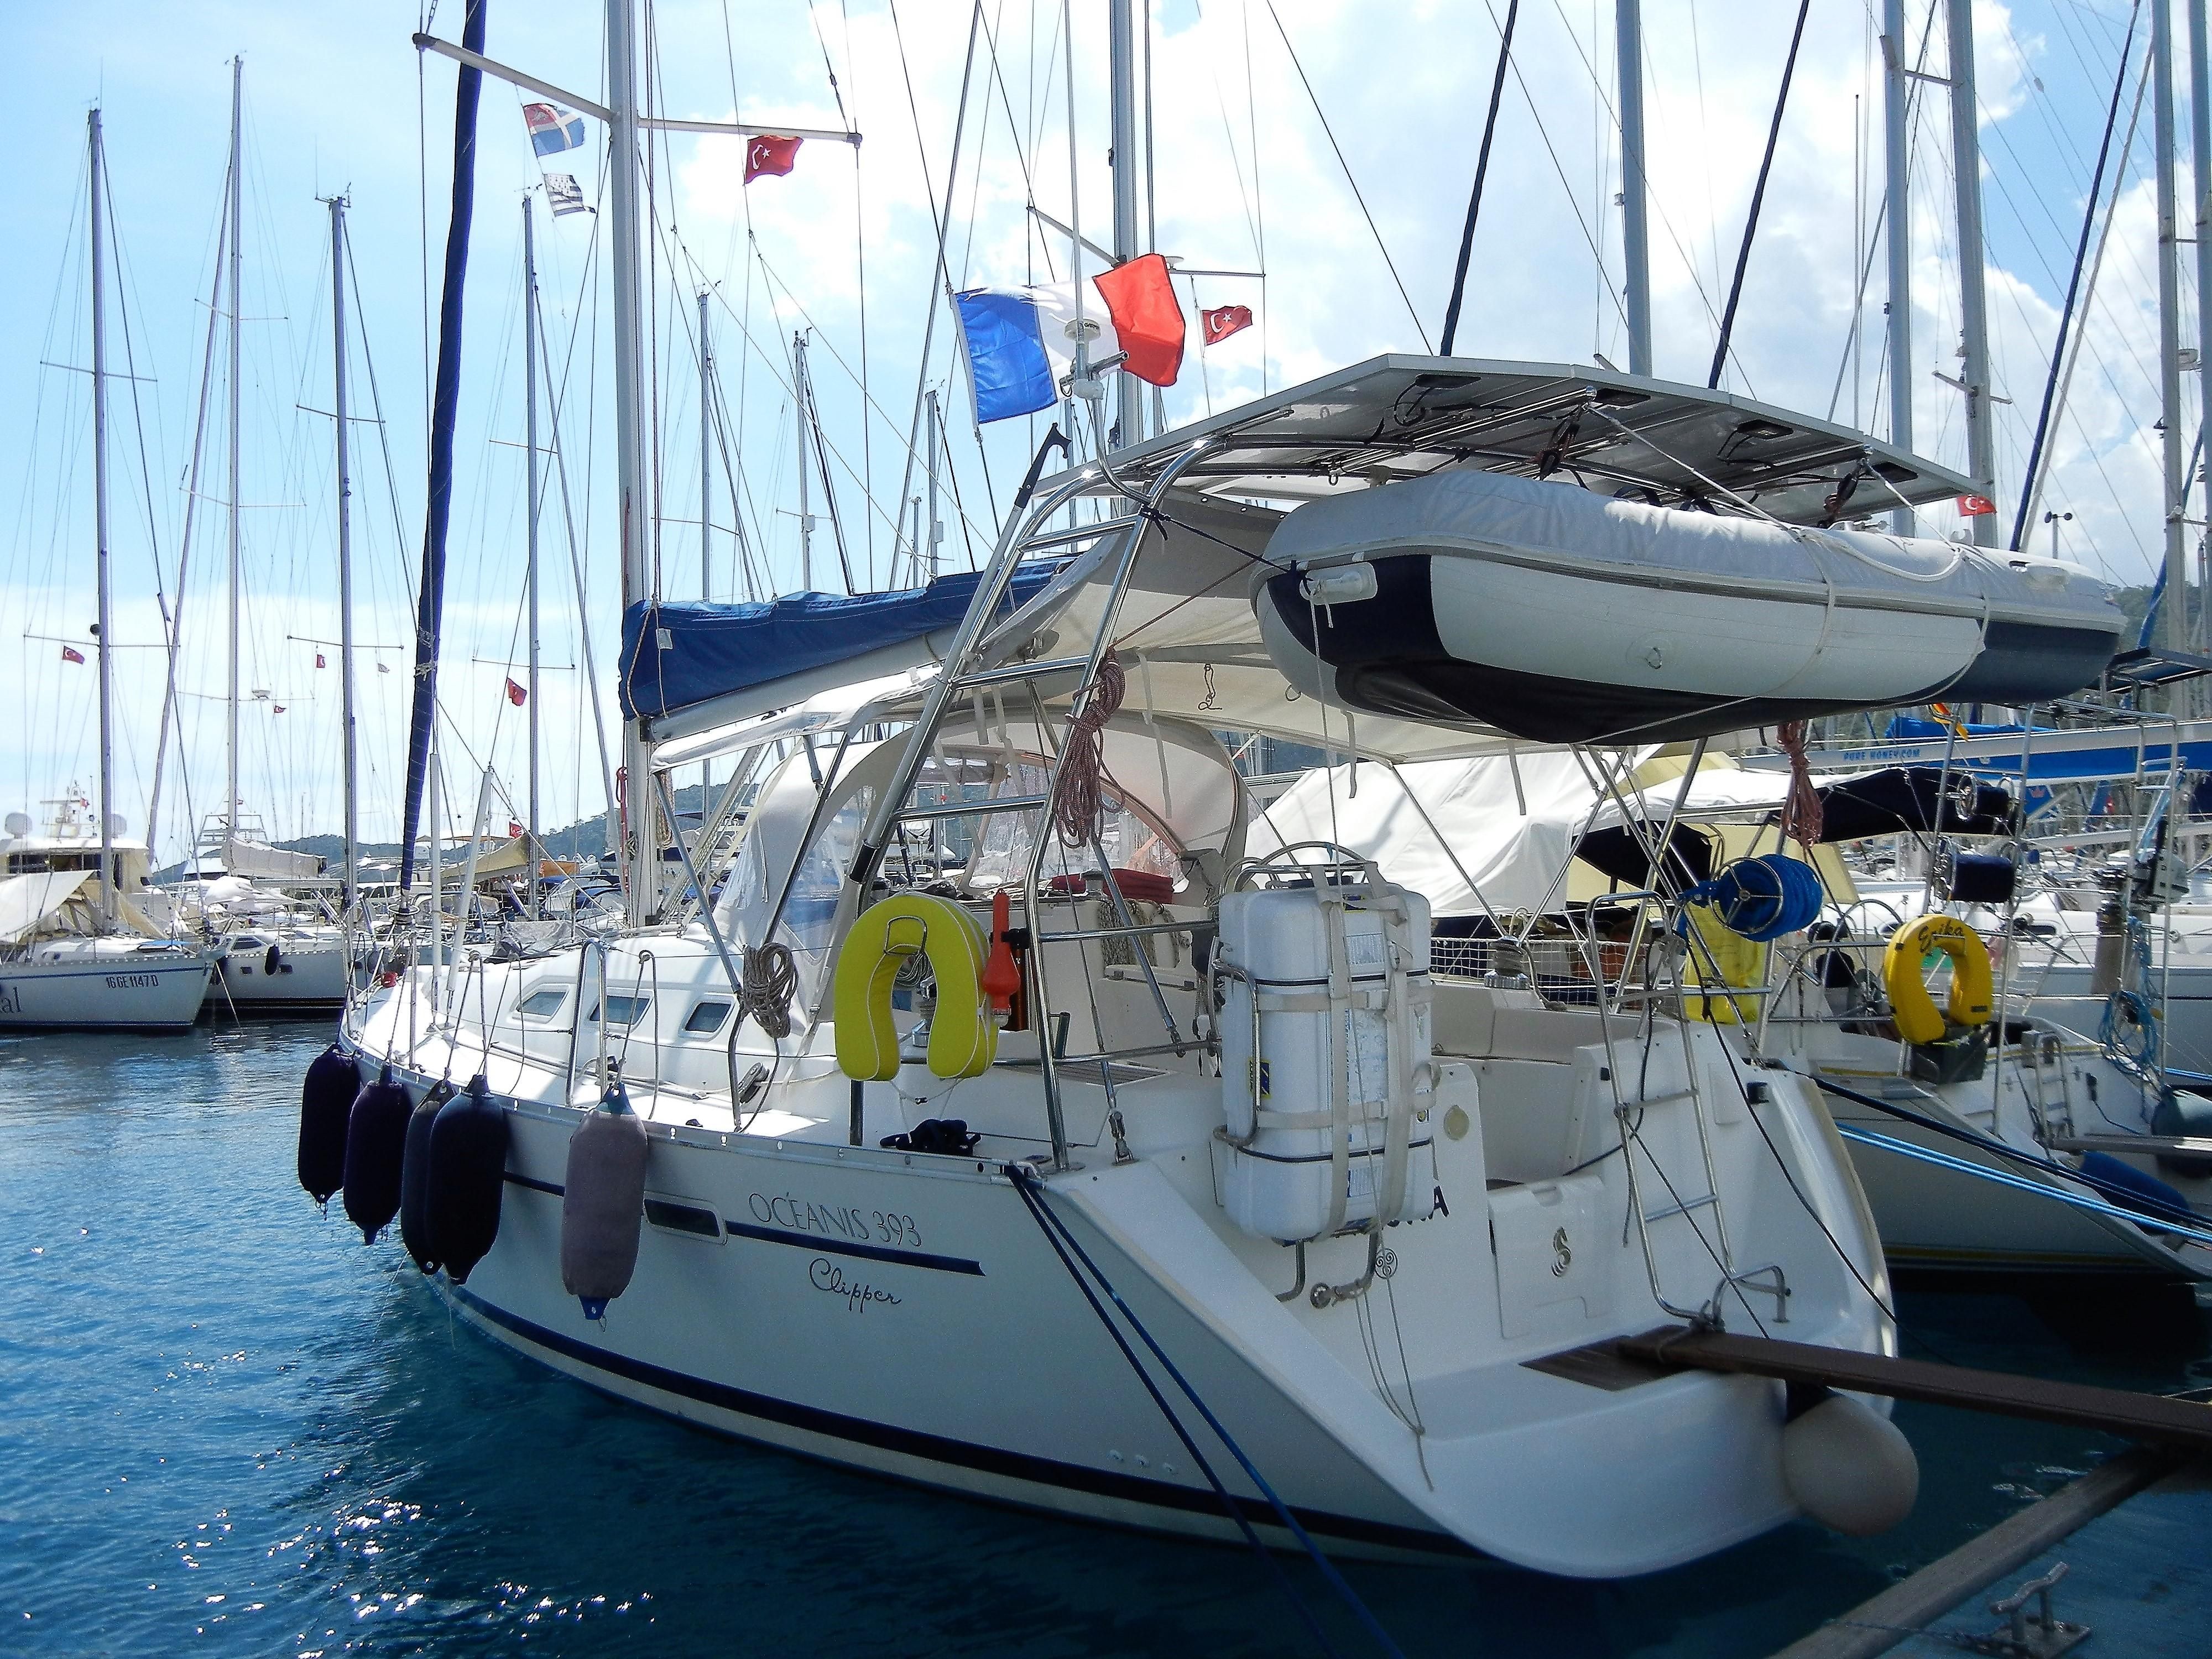 2001 beneteau oceanis 393 sail boat for sale - www